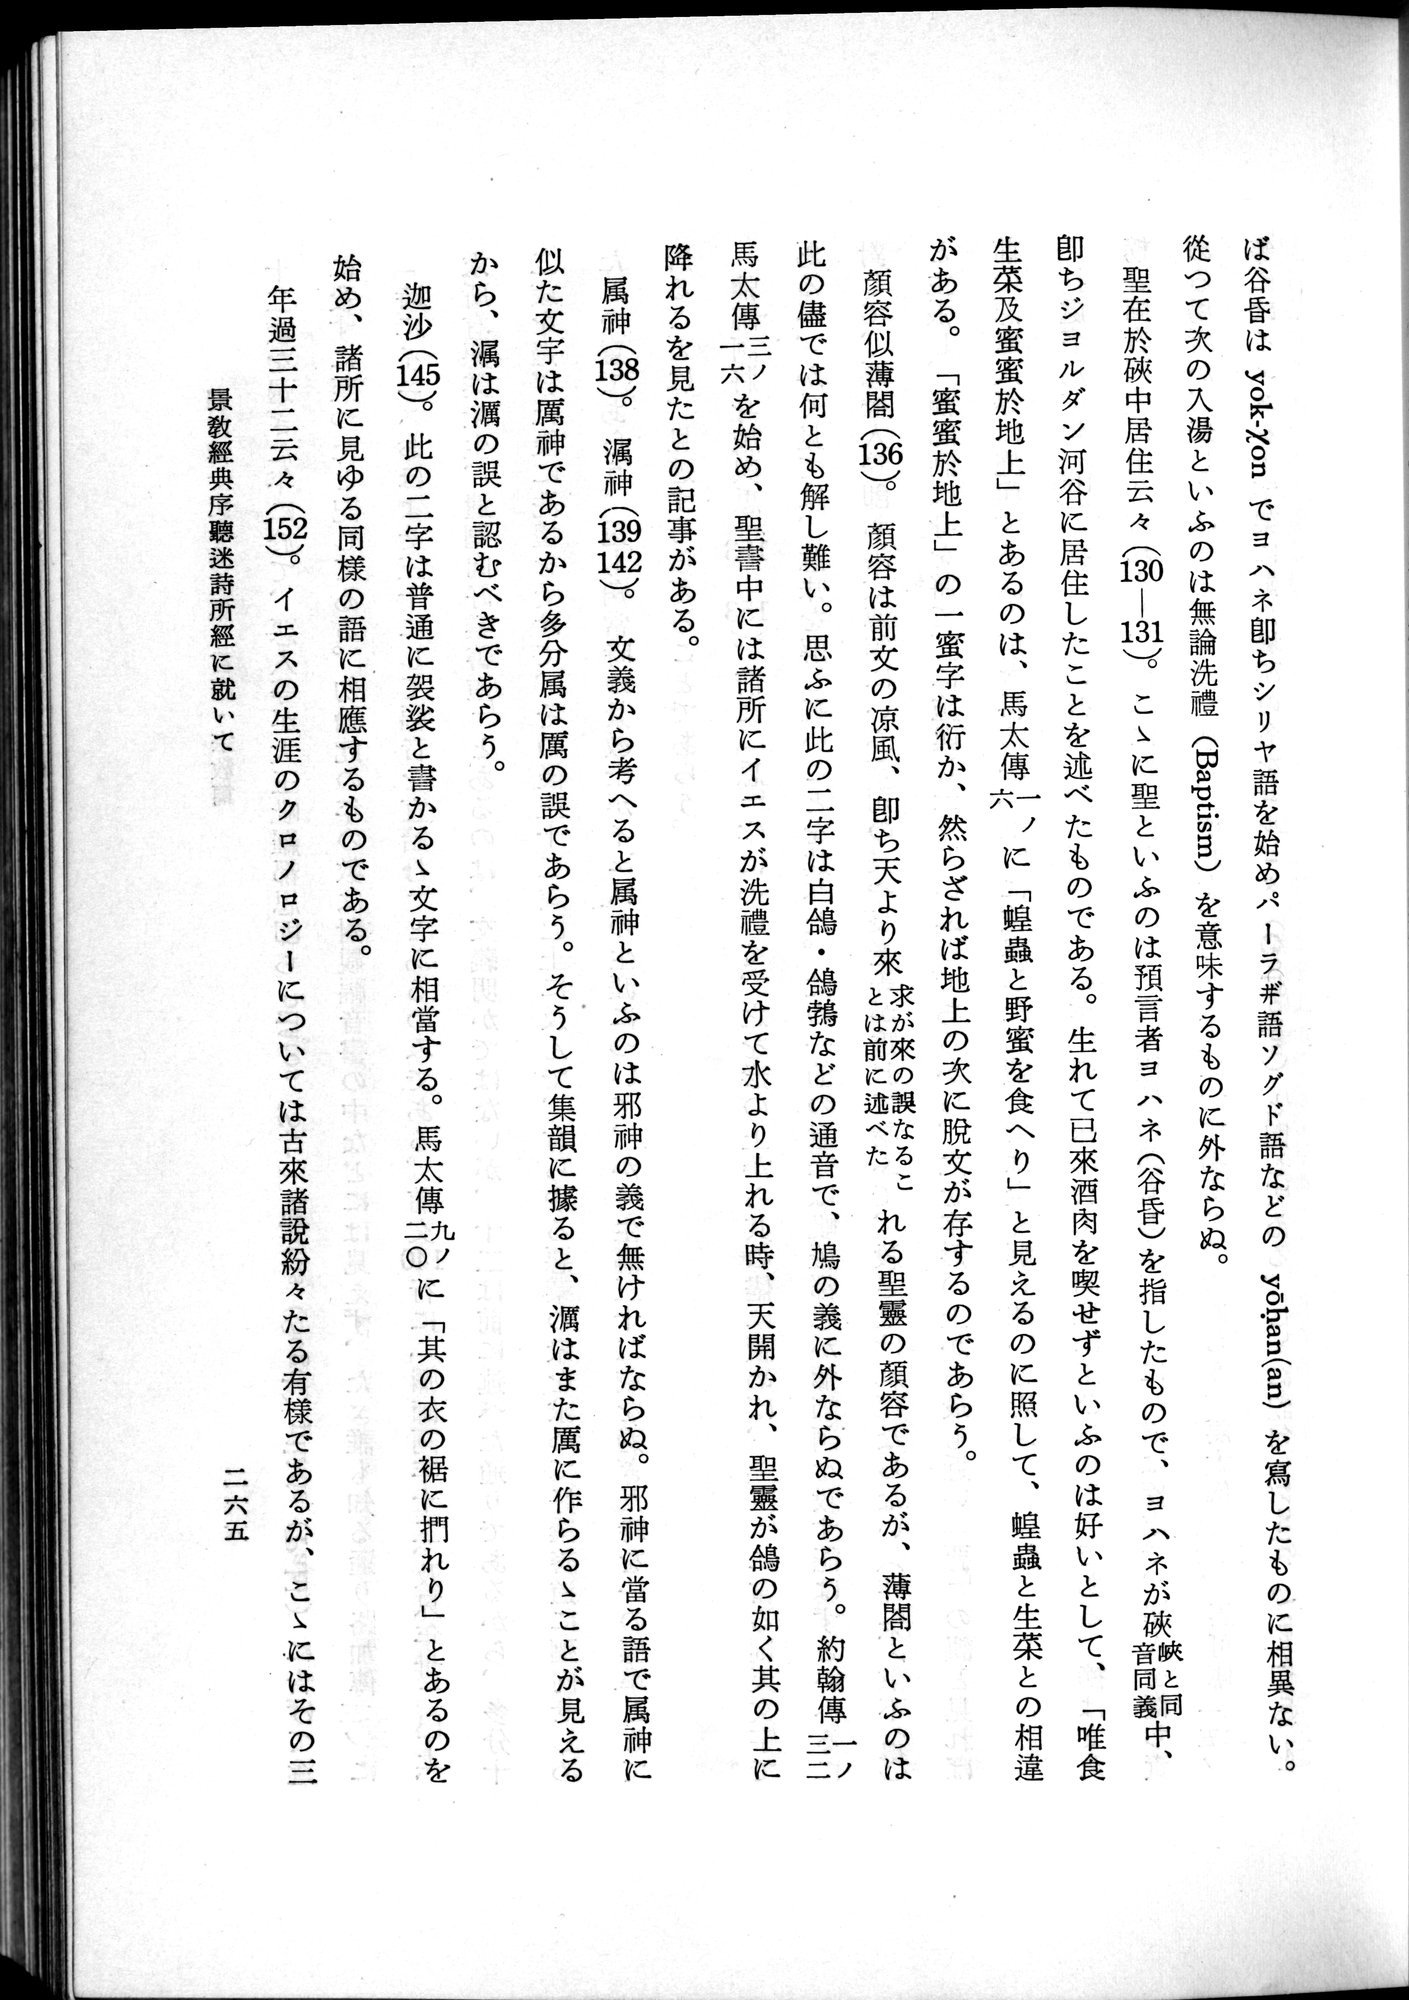 羽田博士史学論文集 : vol.2 / Page 327 (Grayscale High Resolution Image)